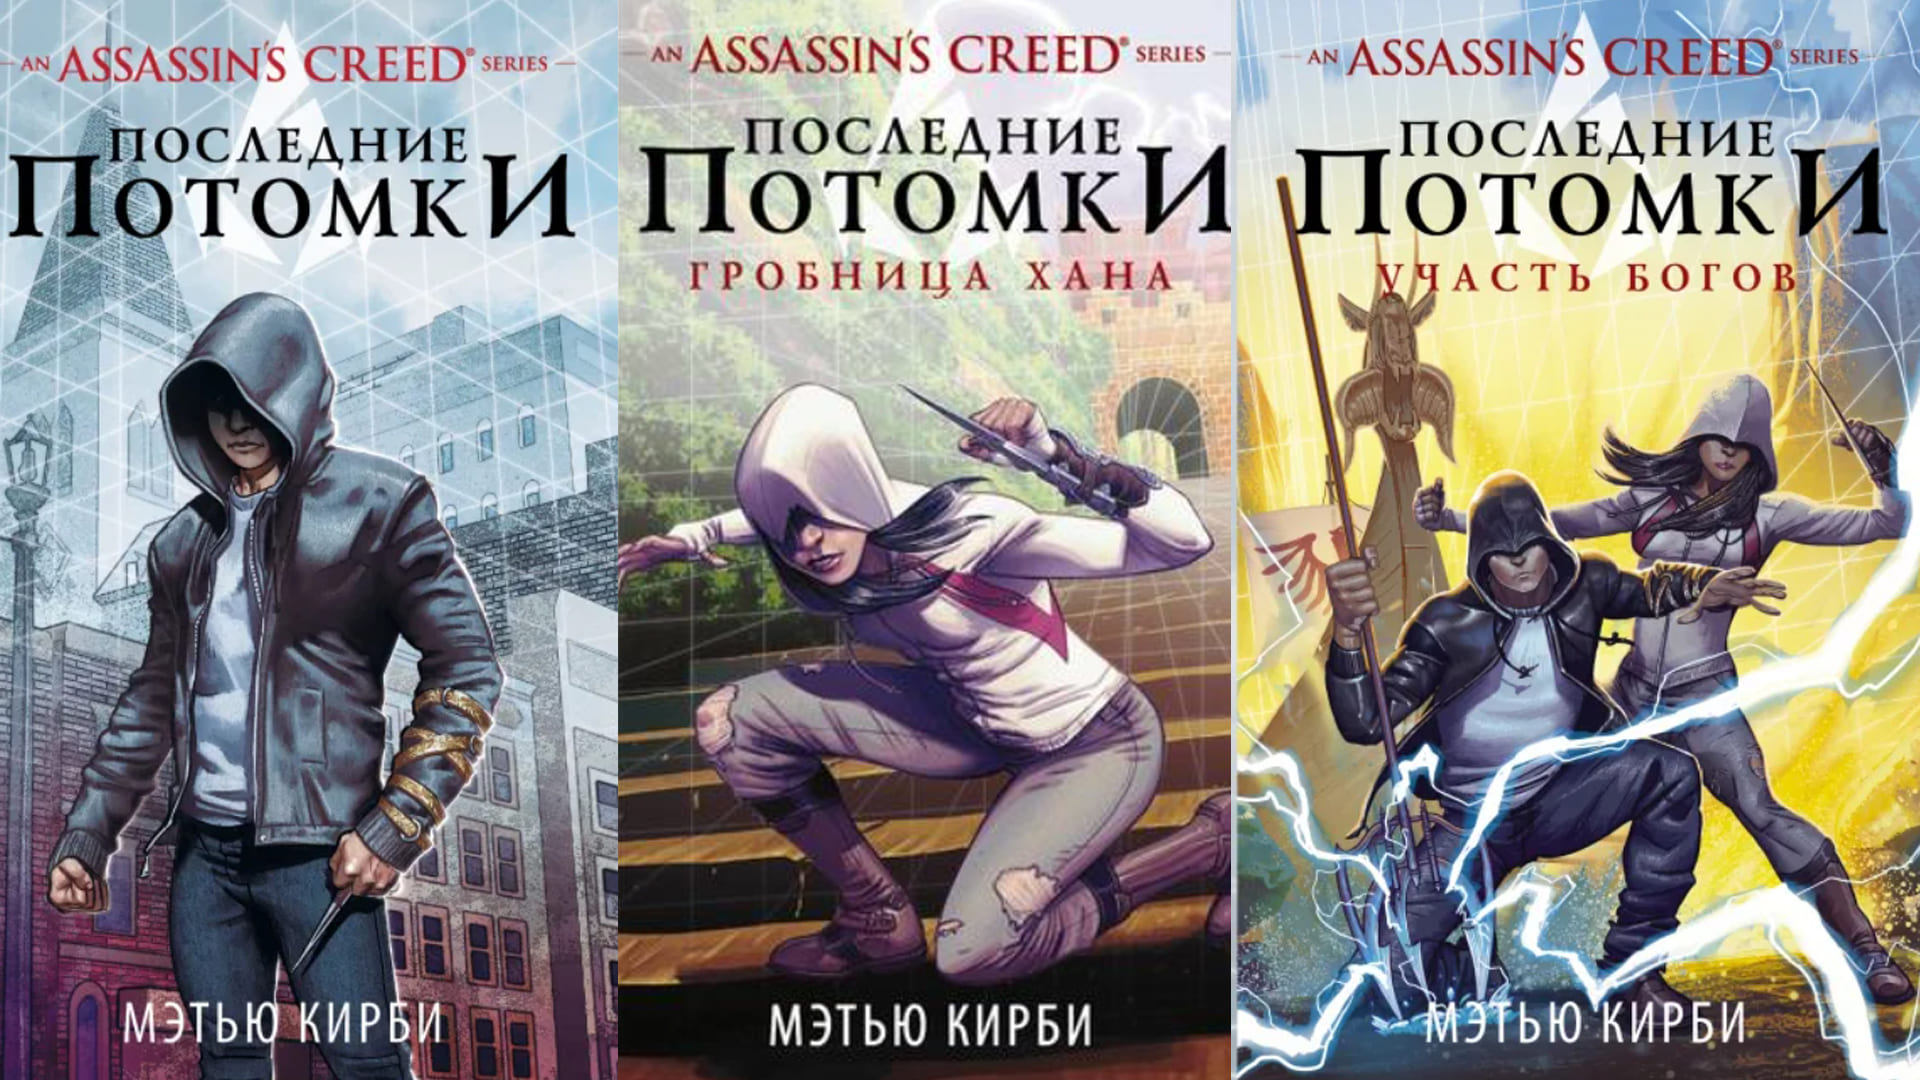 Обложки трилогии книг Assassin’s Creed трилогия «Последние потомки»